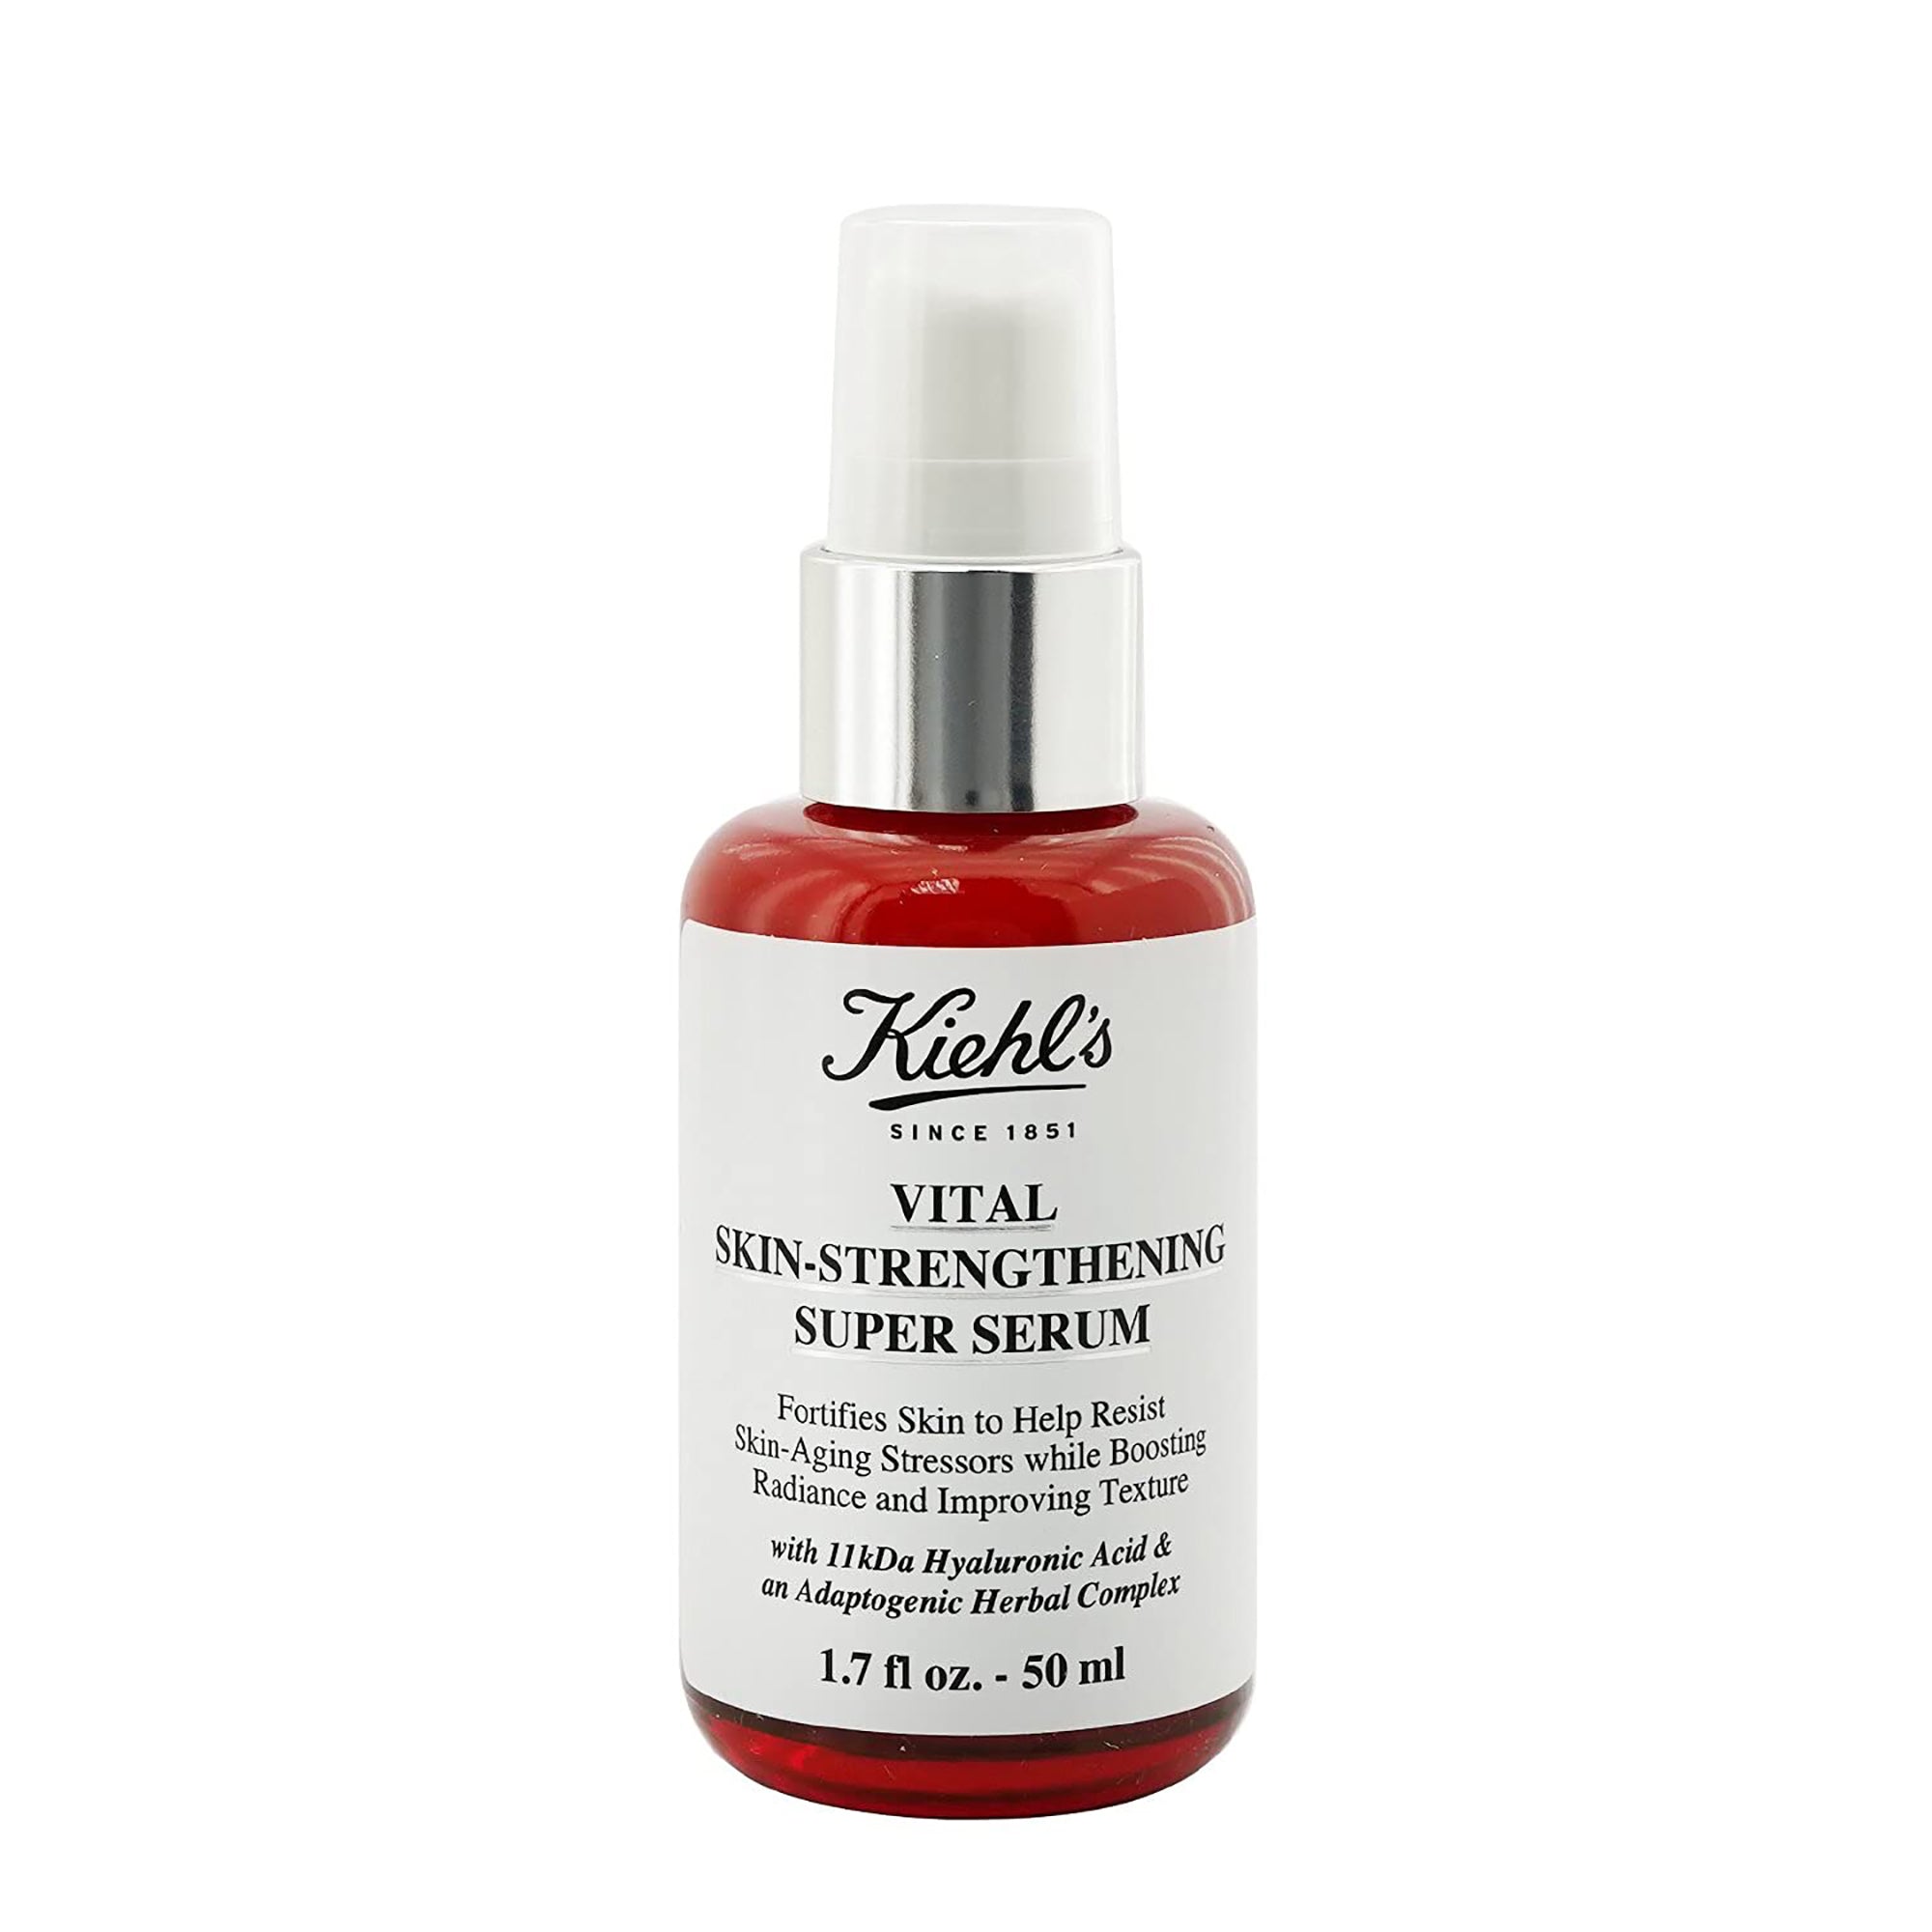 Kiehl's Vital Skin-Strengthening Hyaluronic Acid Super Serum / 1.7OZ